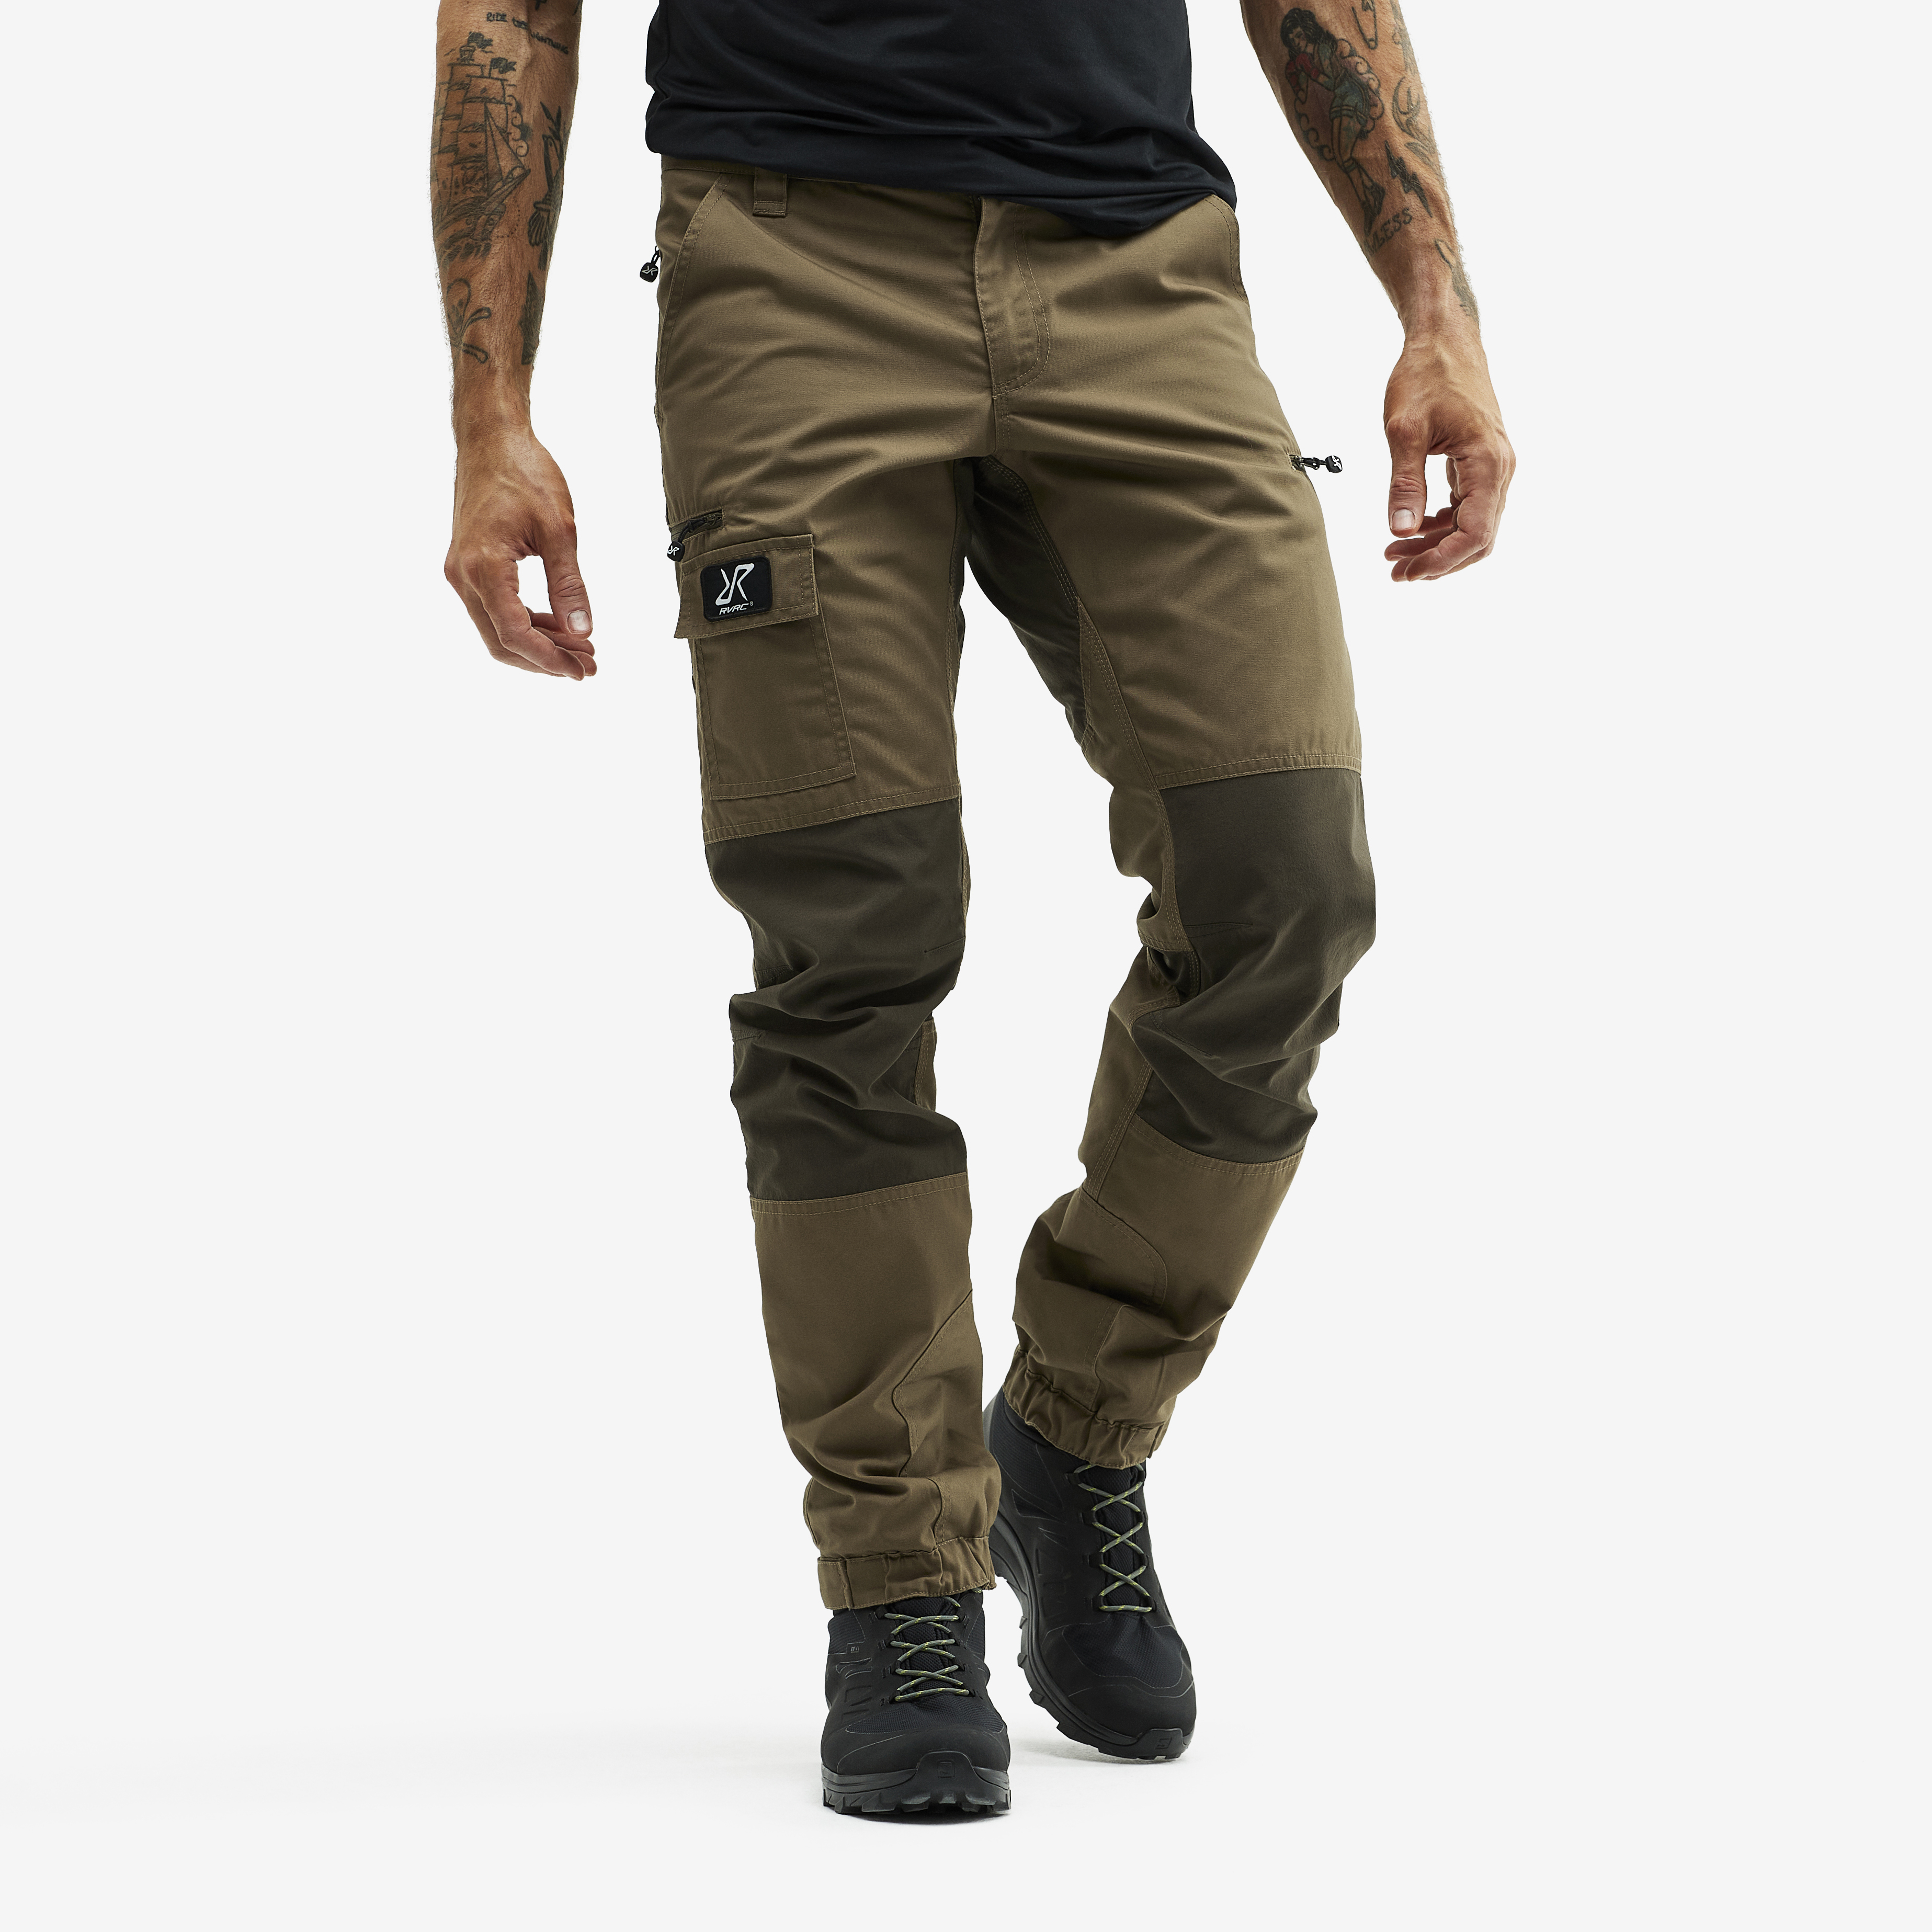 Nordwand outdoorové kalhoty pro muže v hnědé barvě